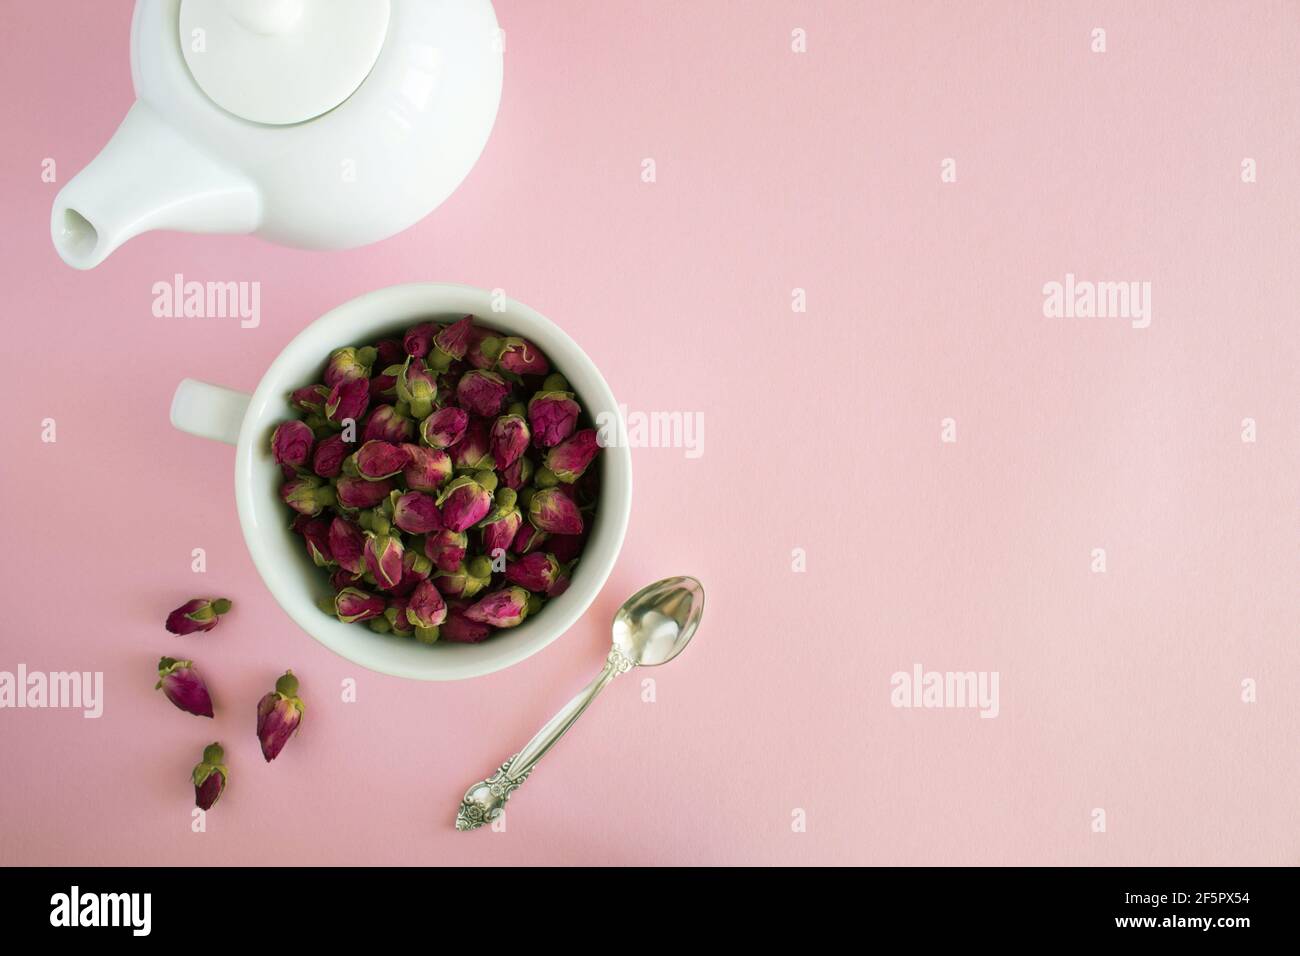 Asciugare le rose rosa nella tazza bianca e preparare il bollitore su sfondo rosa.Copia spazio.Vista dall'alto. Foto Stock